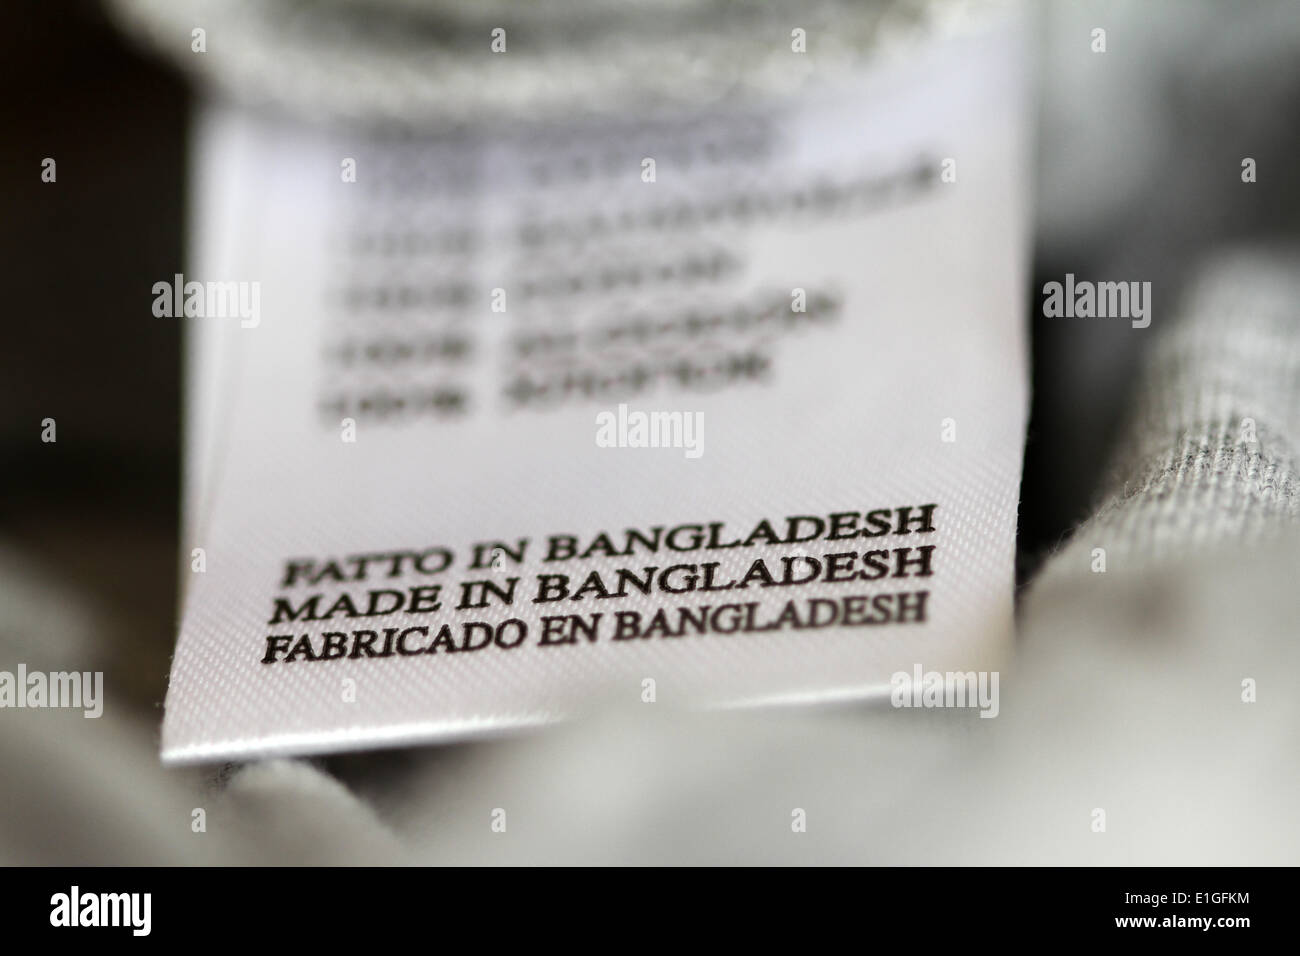 Clothes marker - Made in Bangladesh. May 2014. Stock Photo